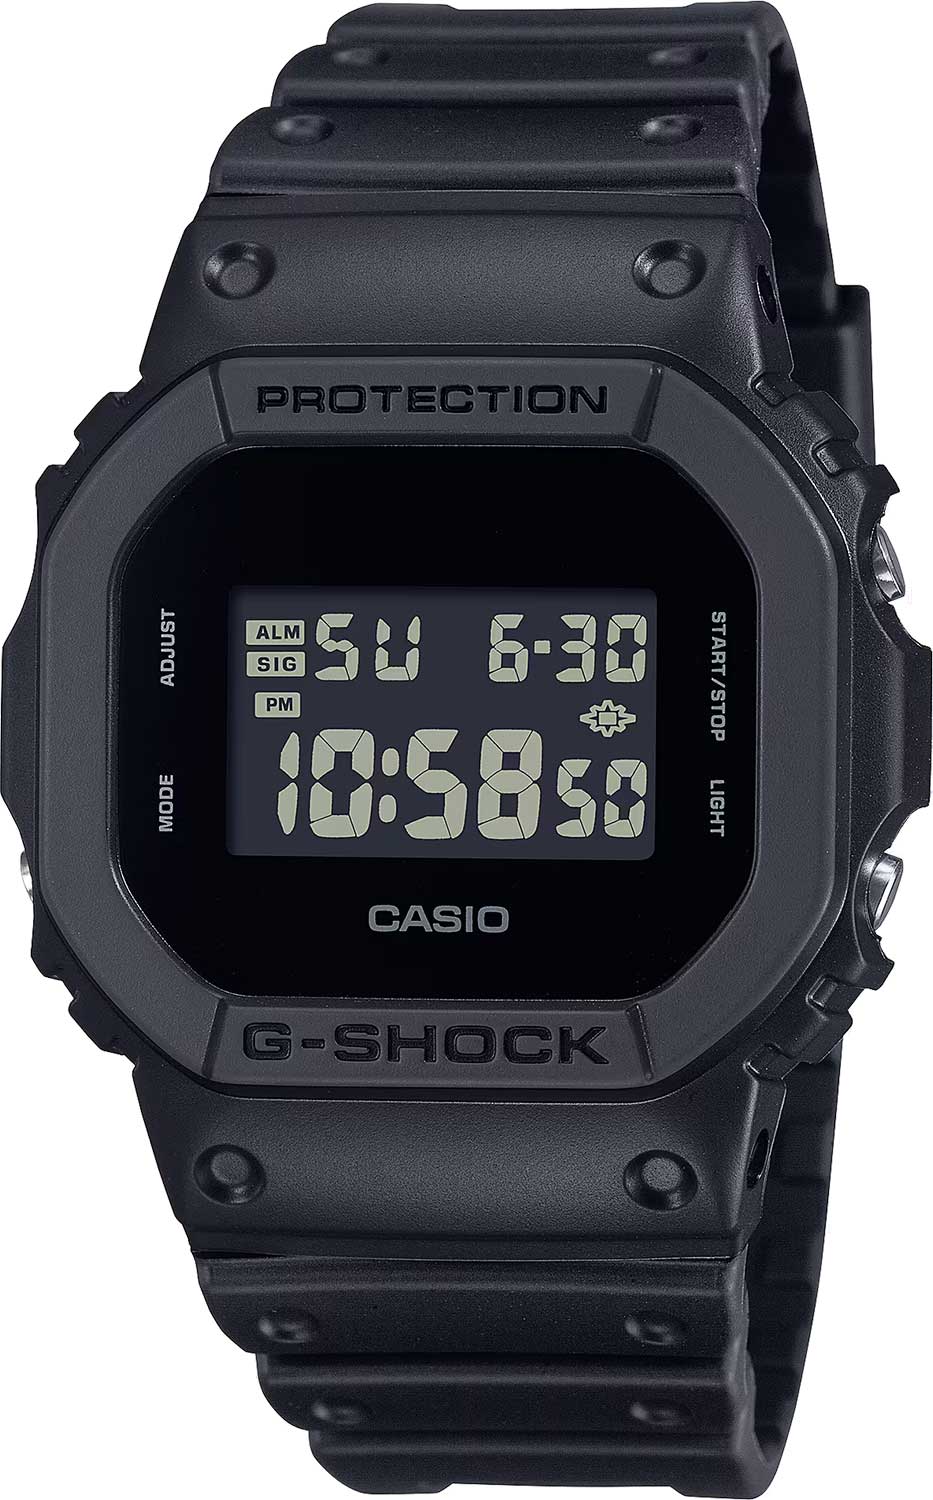    Casio G-SHOCK DW-5600UBB-1  